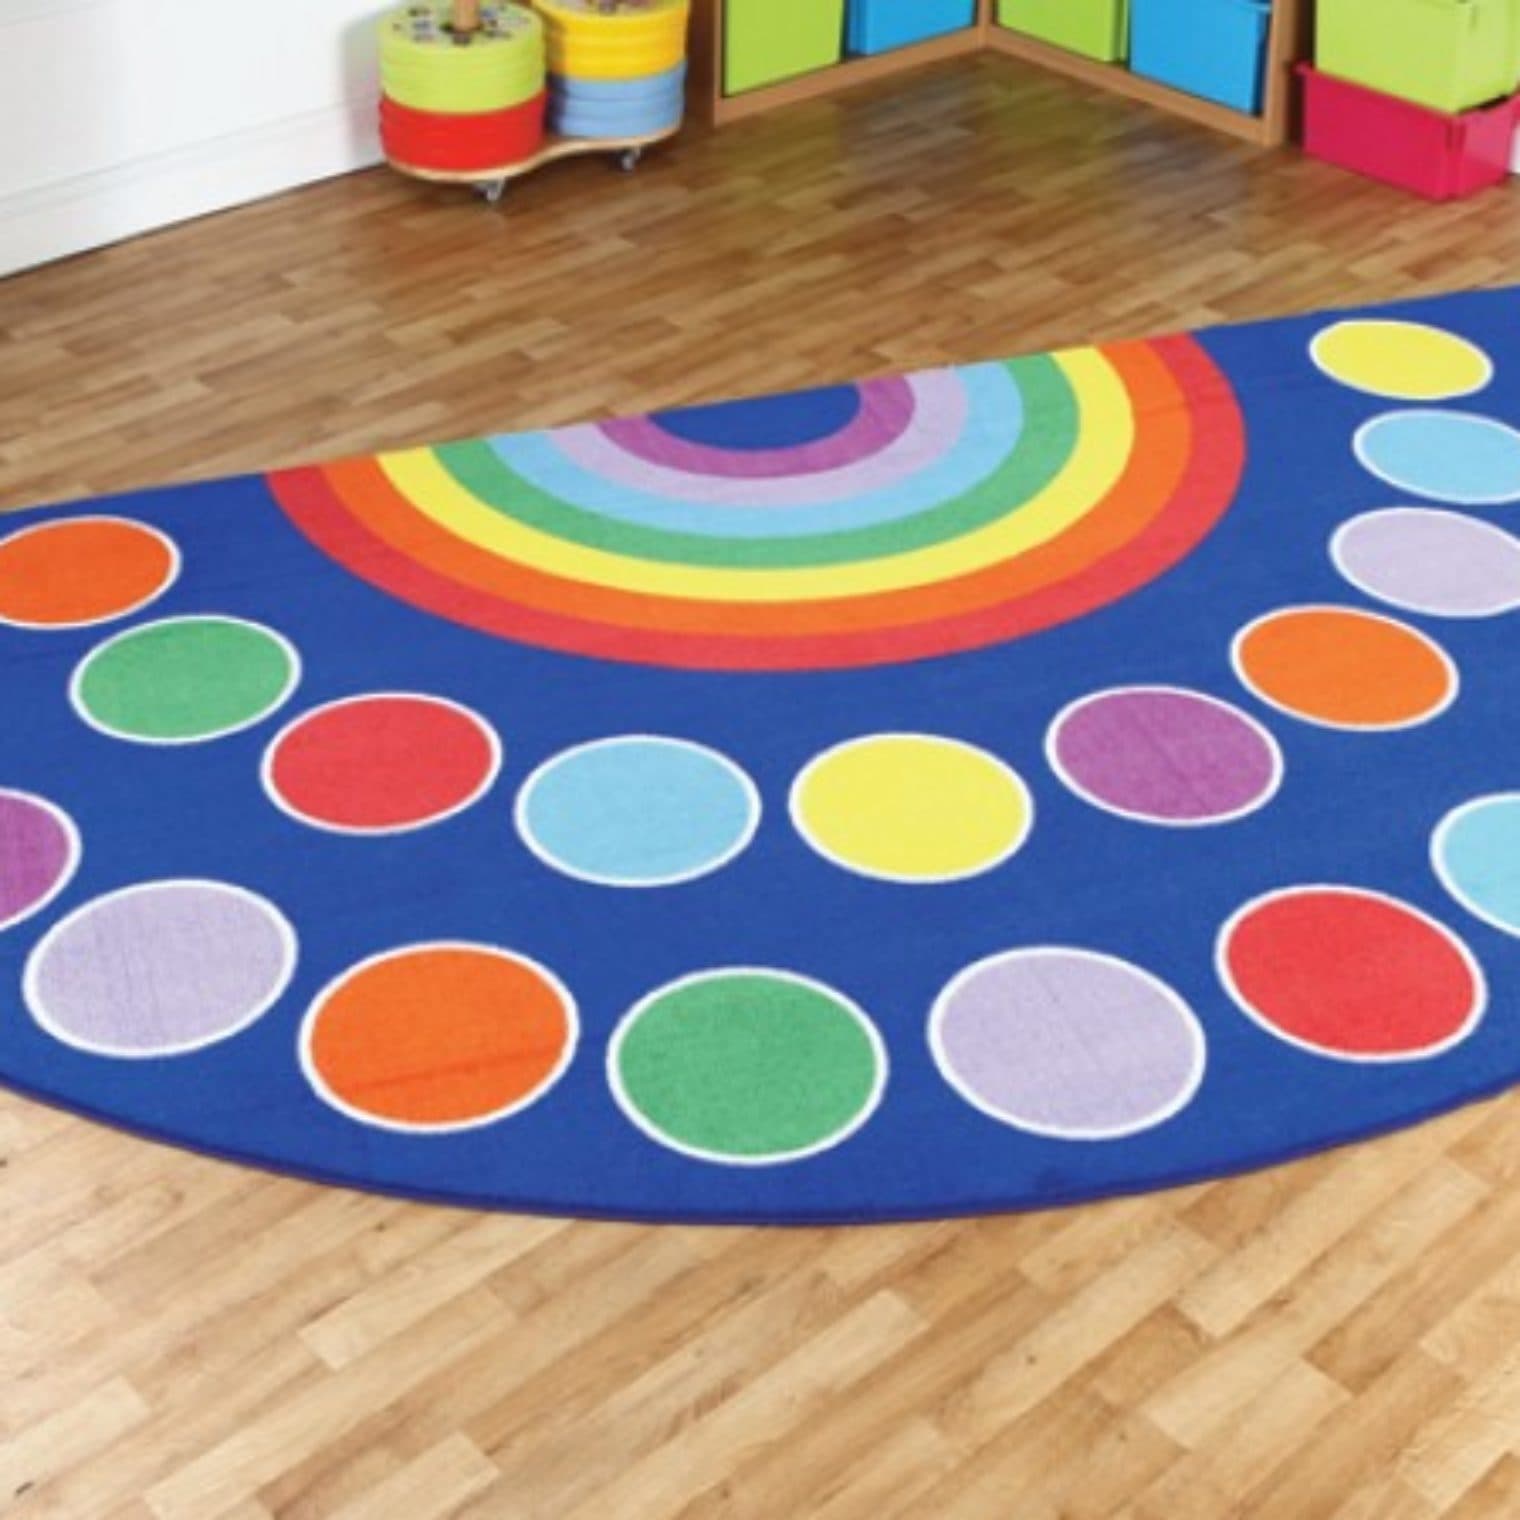 Rainbow semi-circle carpet